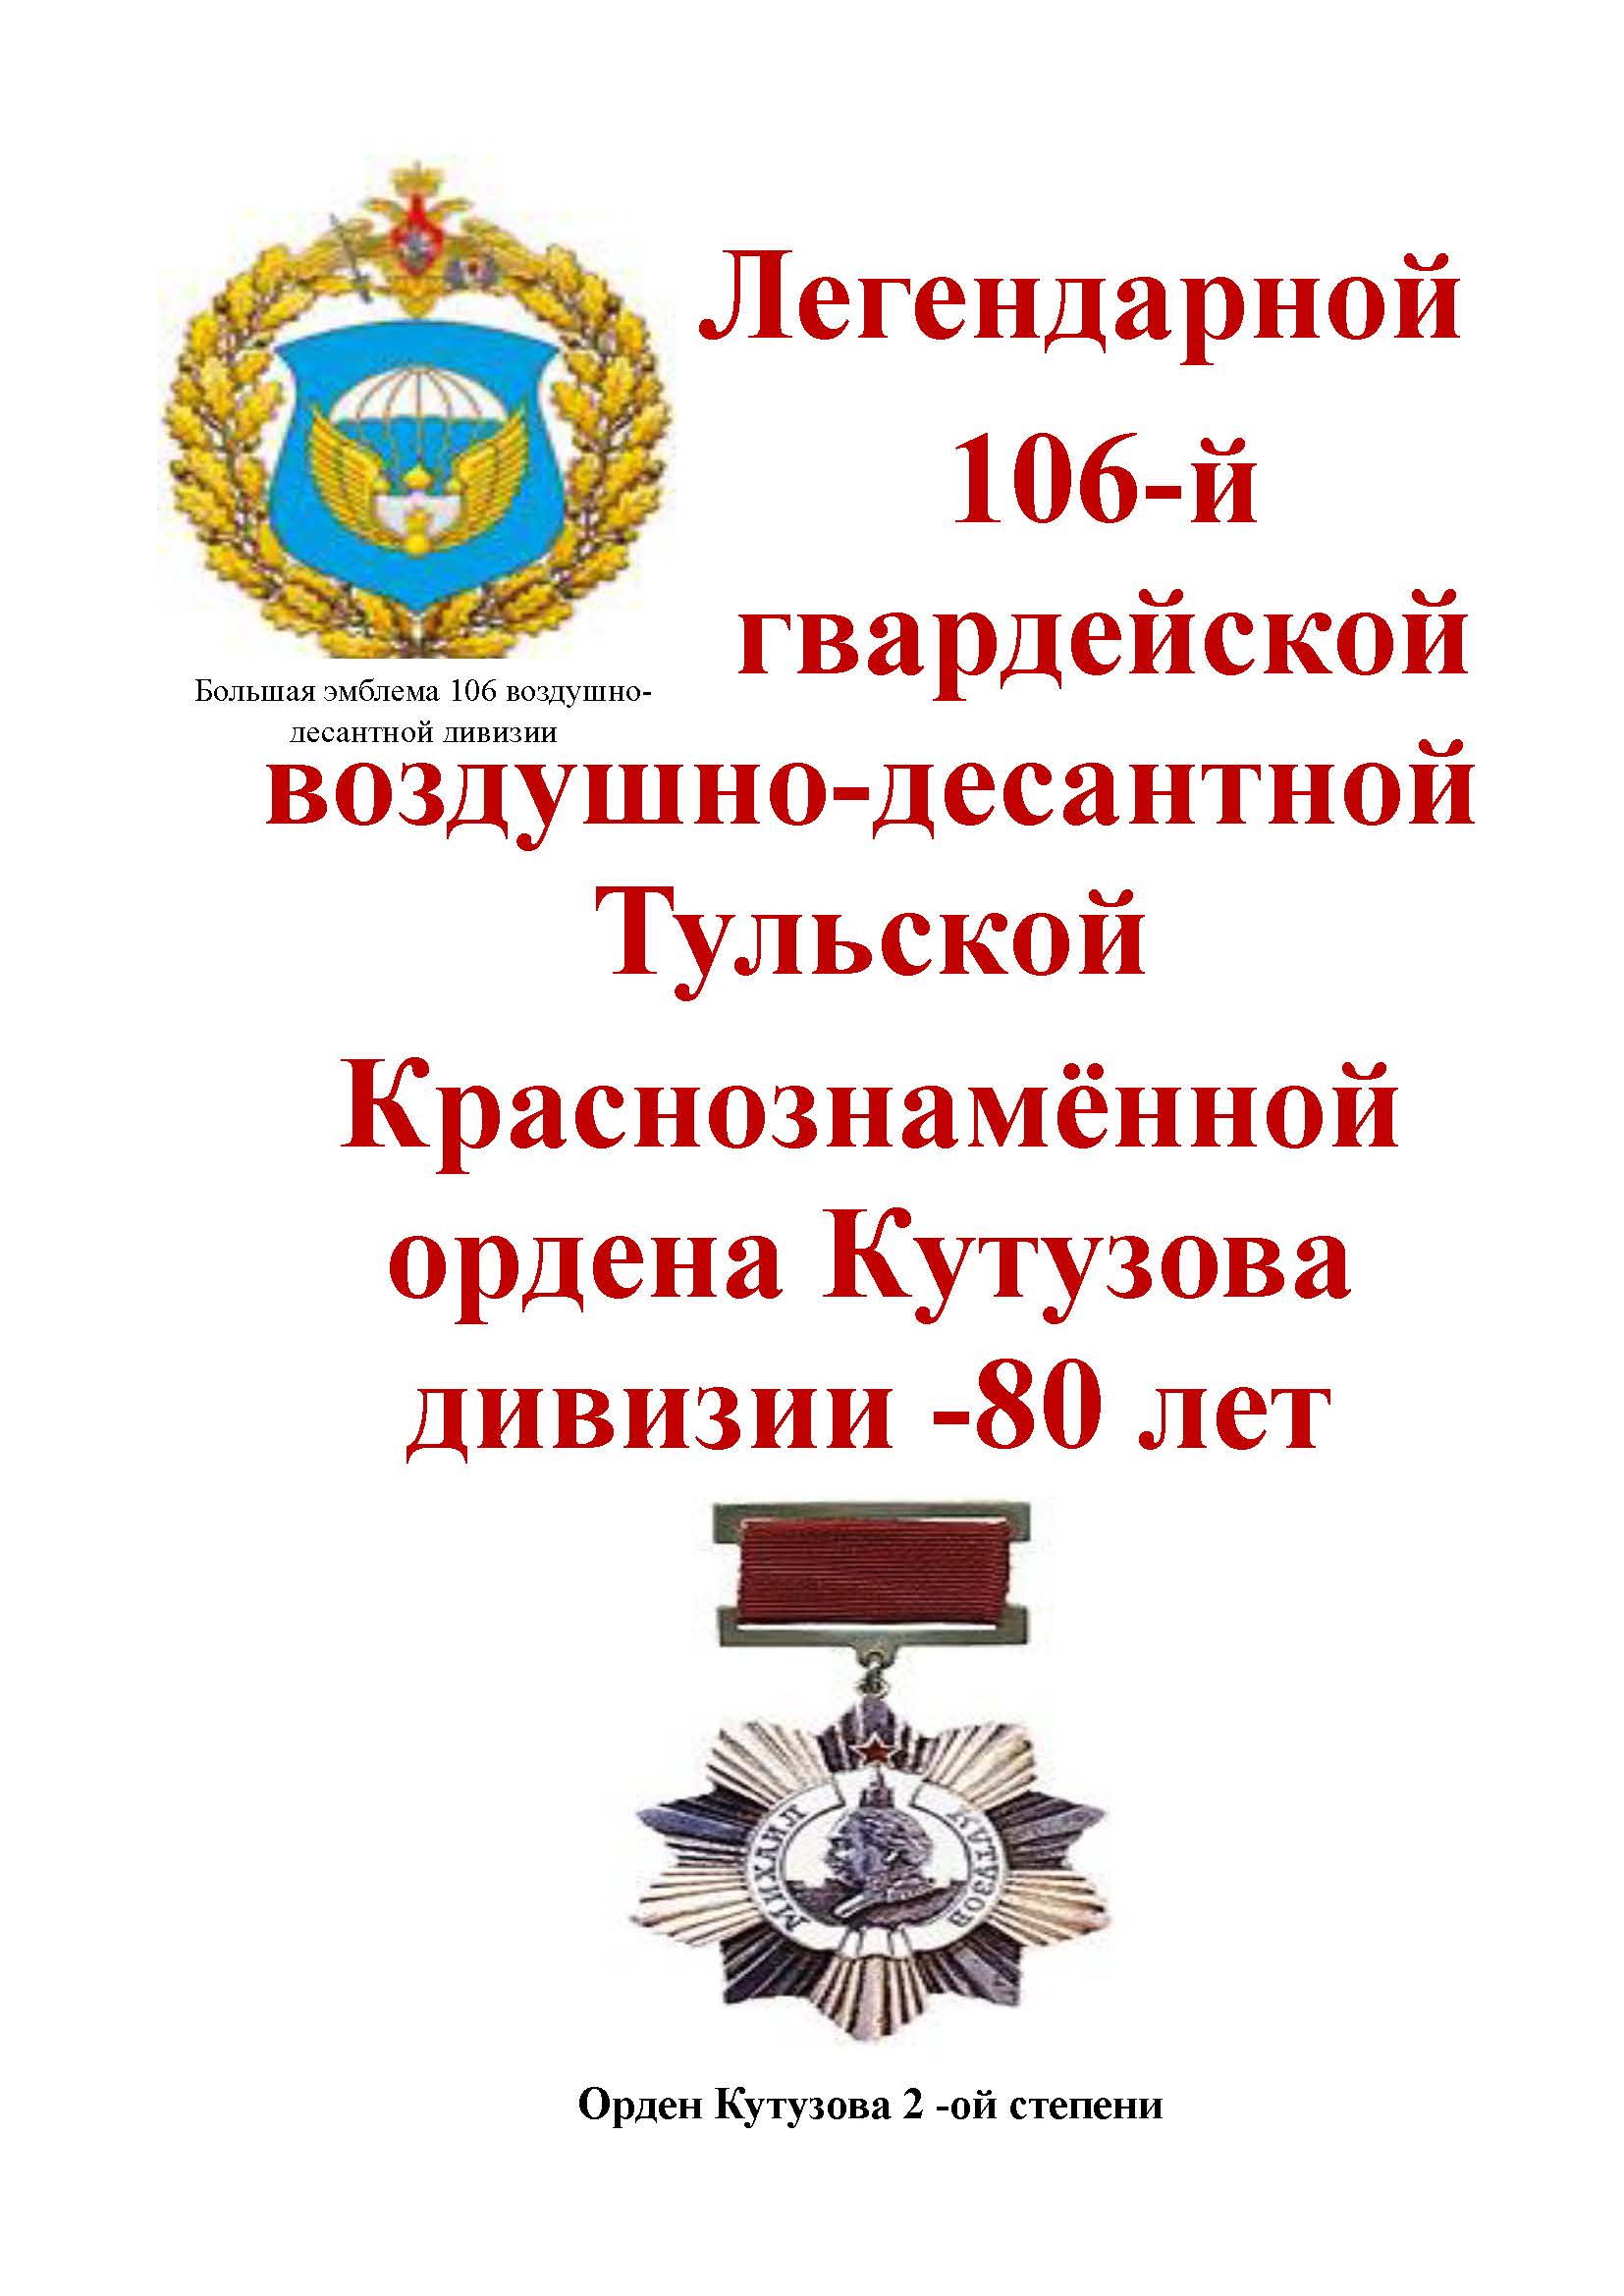 80-летие 106 - й гвардейской воздушно - десантной Тульской Дважды Краснознаменной ордена Кутузова дивизии.